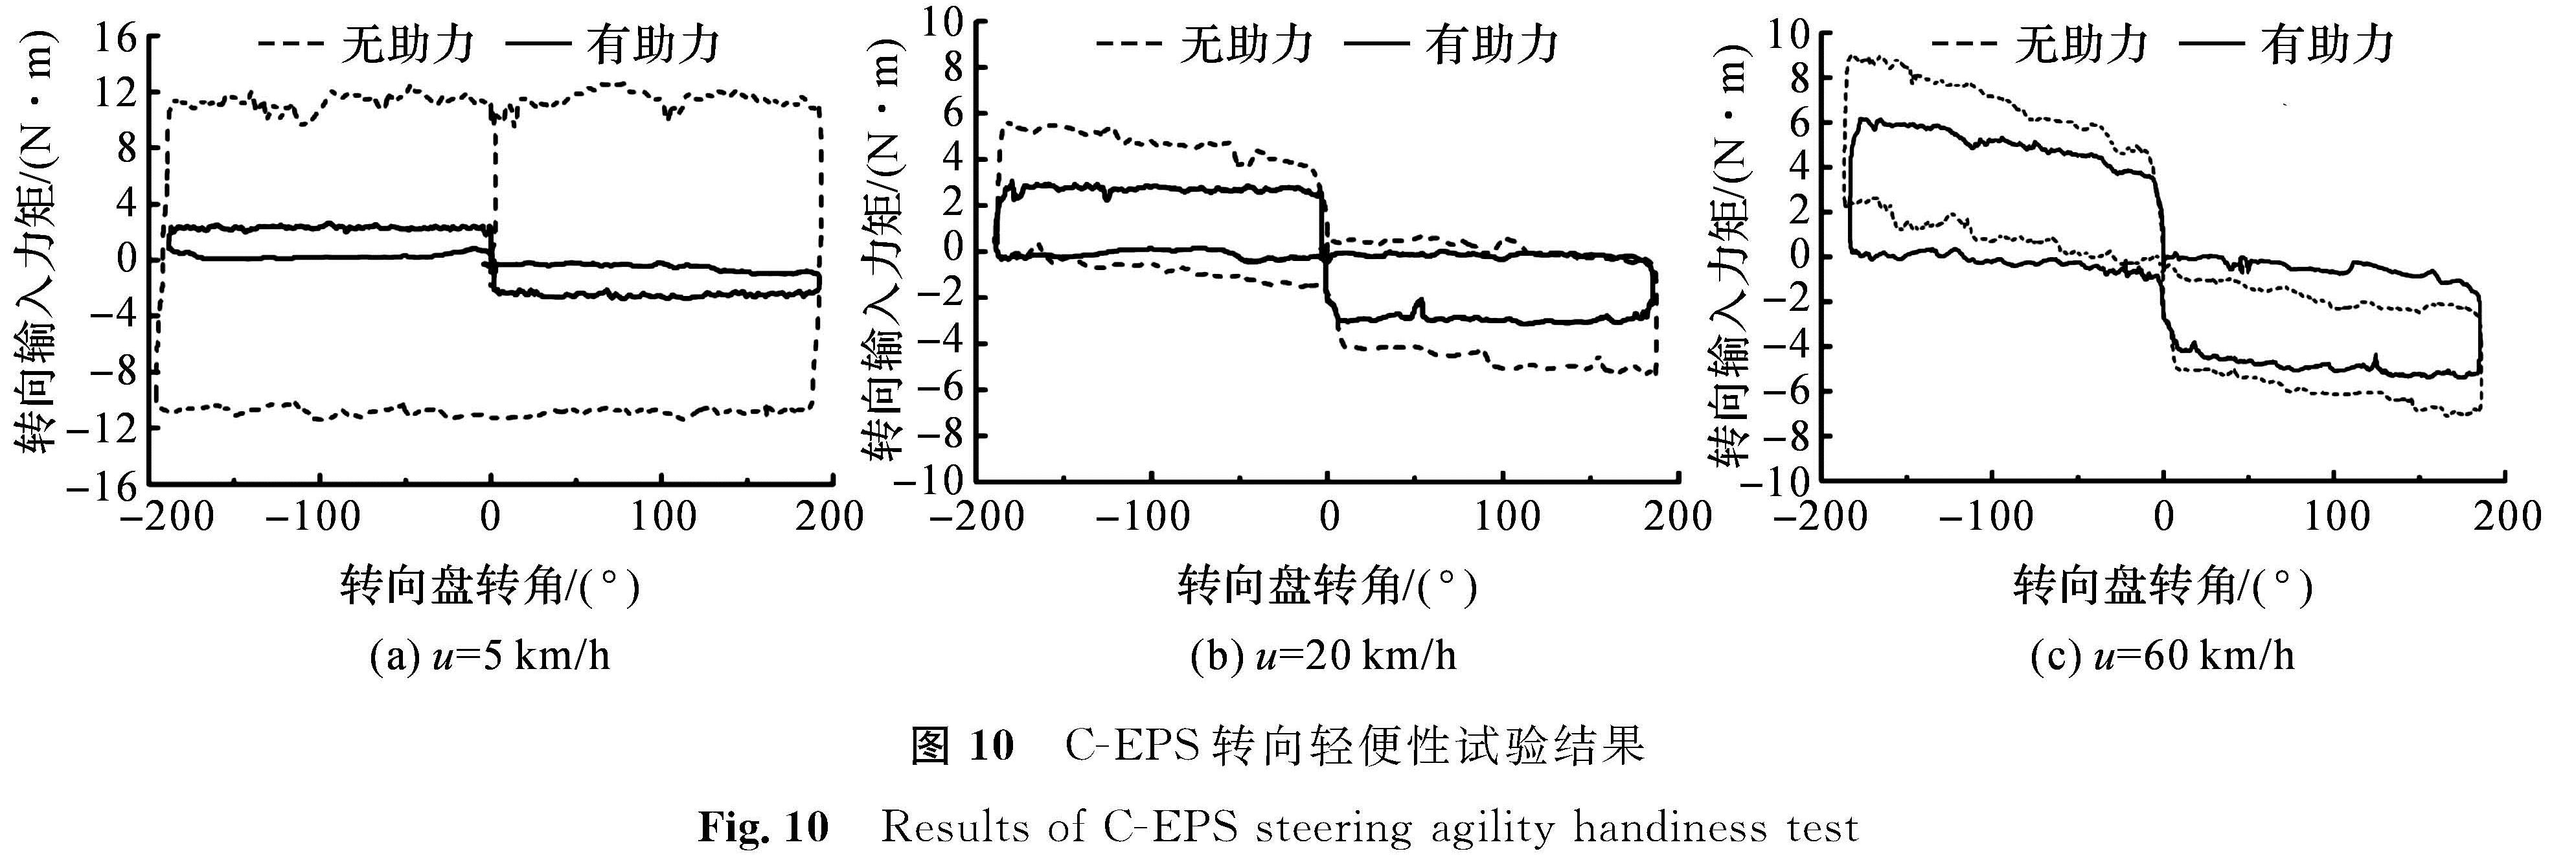 图 10 C-EPS转向轻便性试验结果<br/>Fig.10 Results of C-EPS steering agility handiness test